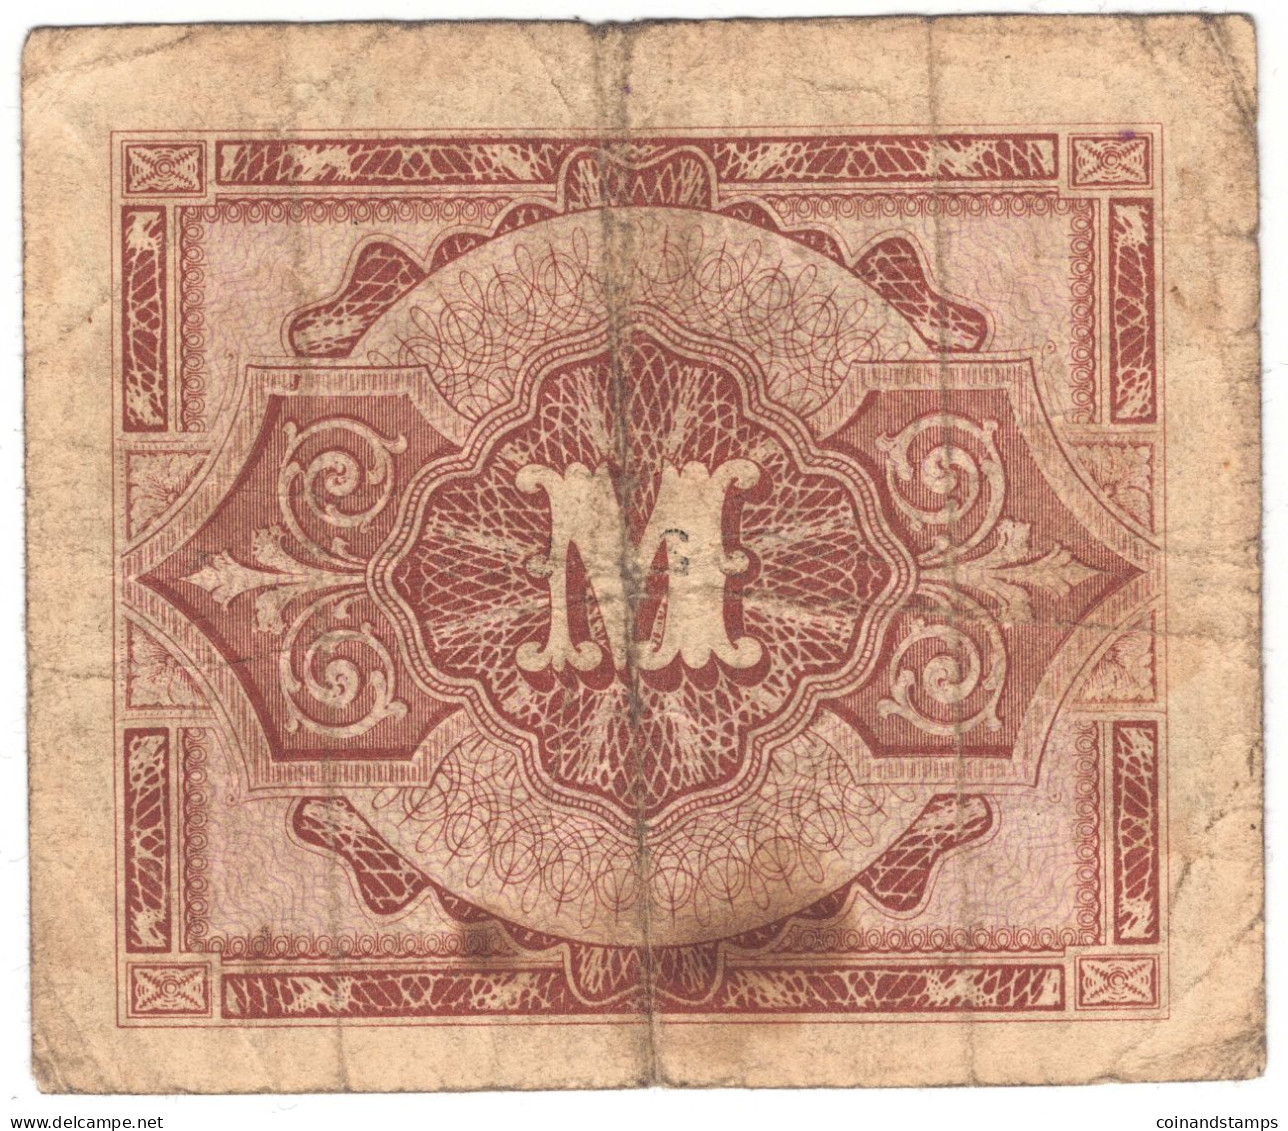 Alliierte Militärbehörde 1944 Lot Mit 3 Banknoten 1,5 Und 100 Mark Rosenberg Nr.201,202,206d, II-III, IV - Colecciones